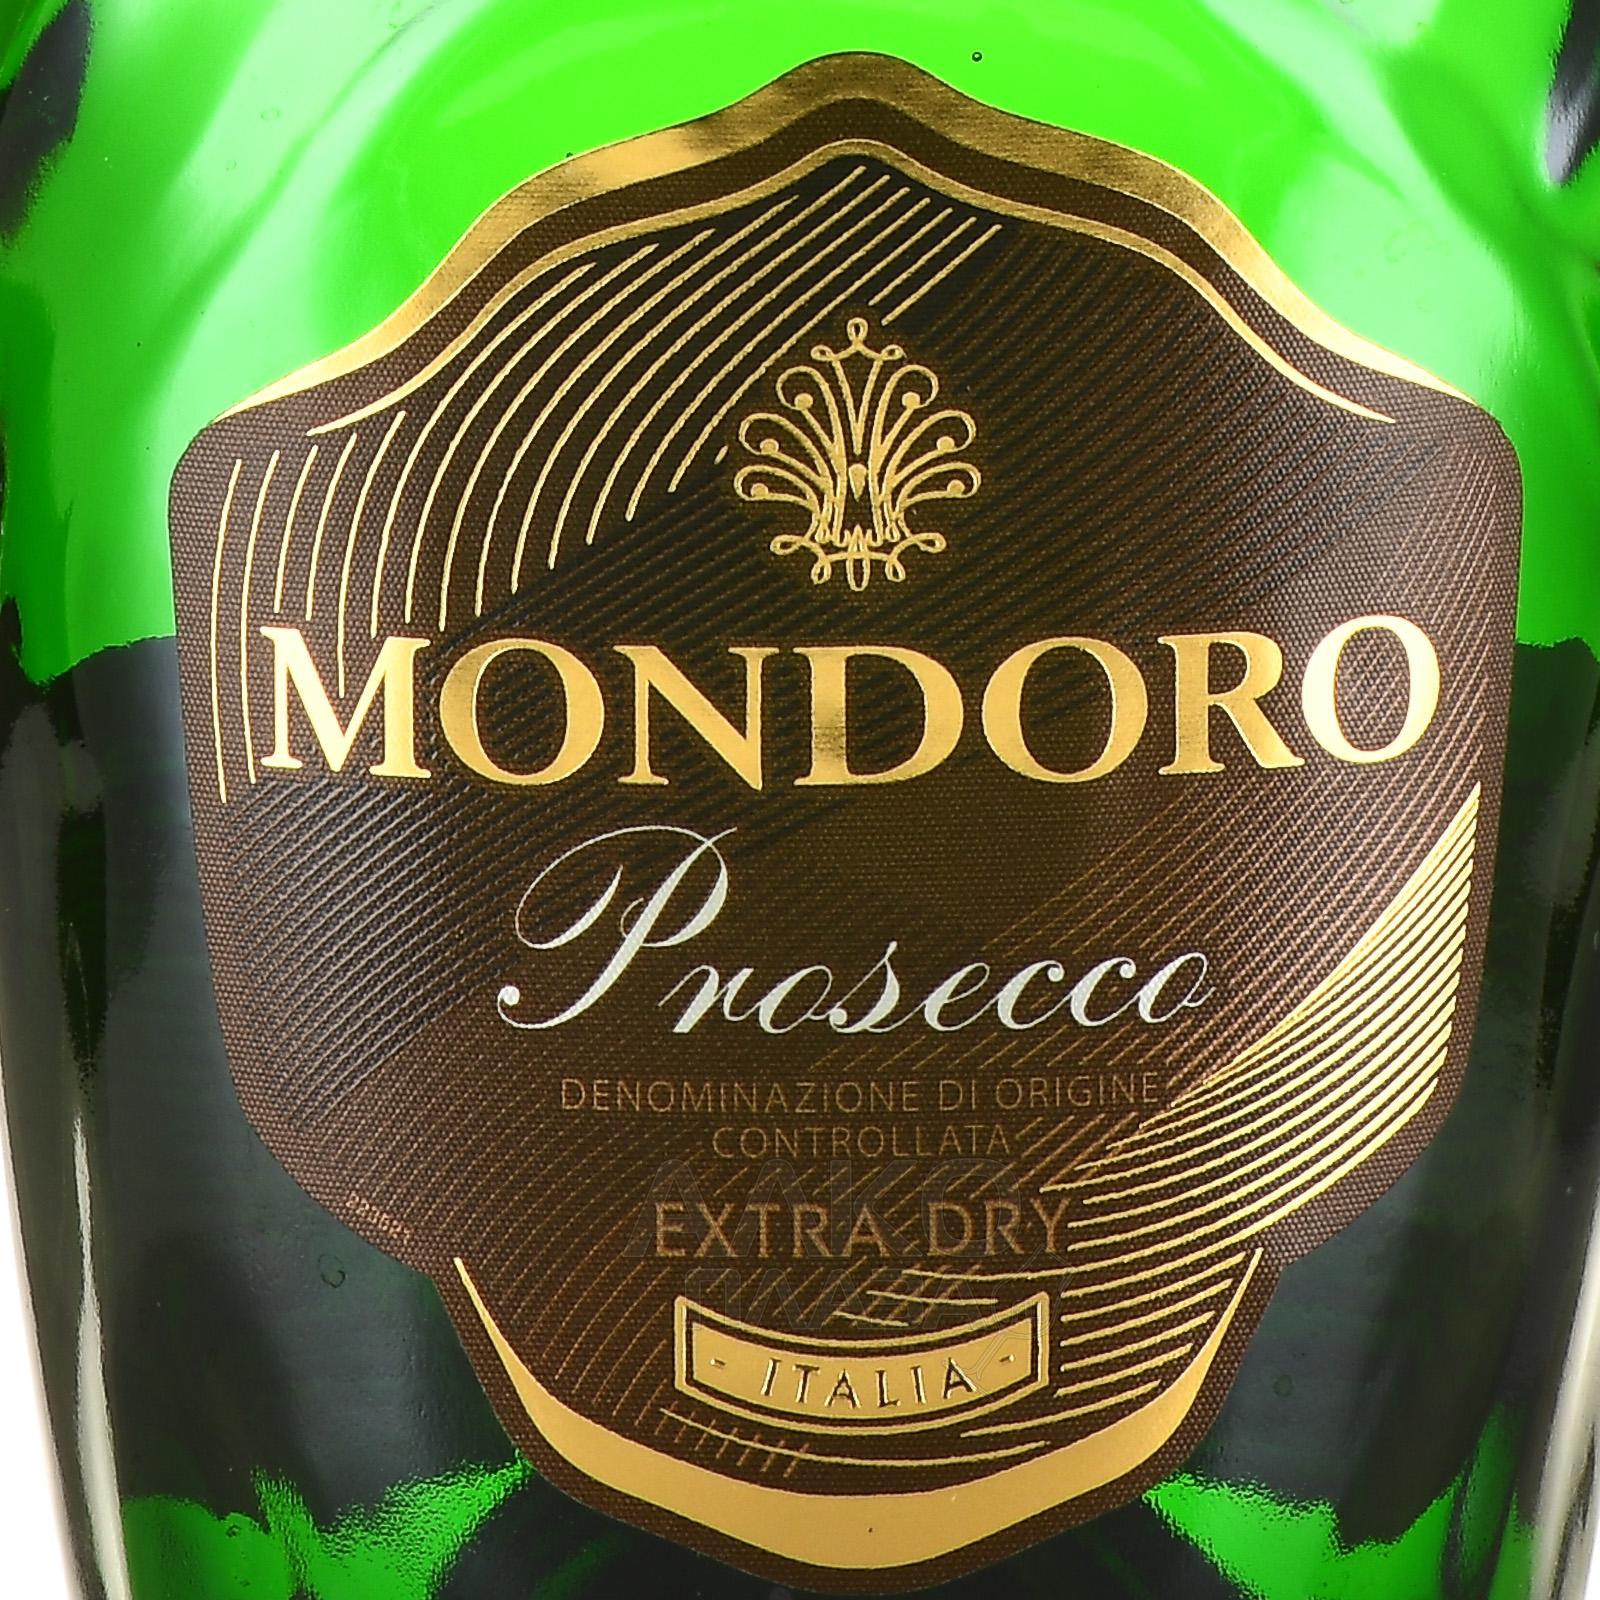 Мондоро проссеуо. Mondoro Prosecco. Мондоро Просекко шампанское. Мондоро Просекко дог. Шампанское мондоро отзывы